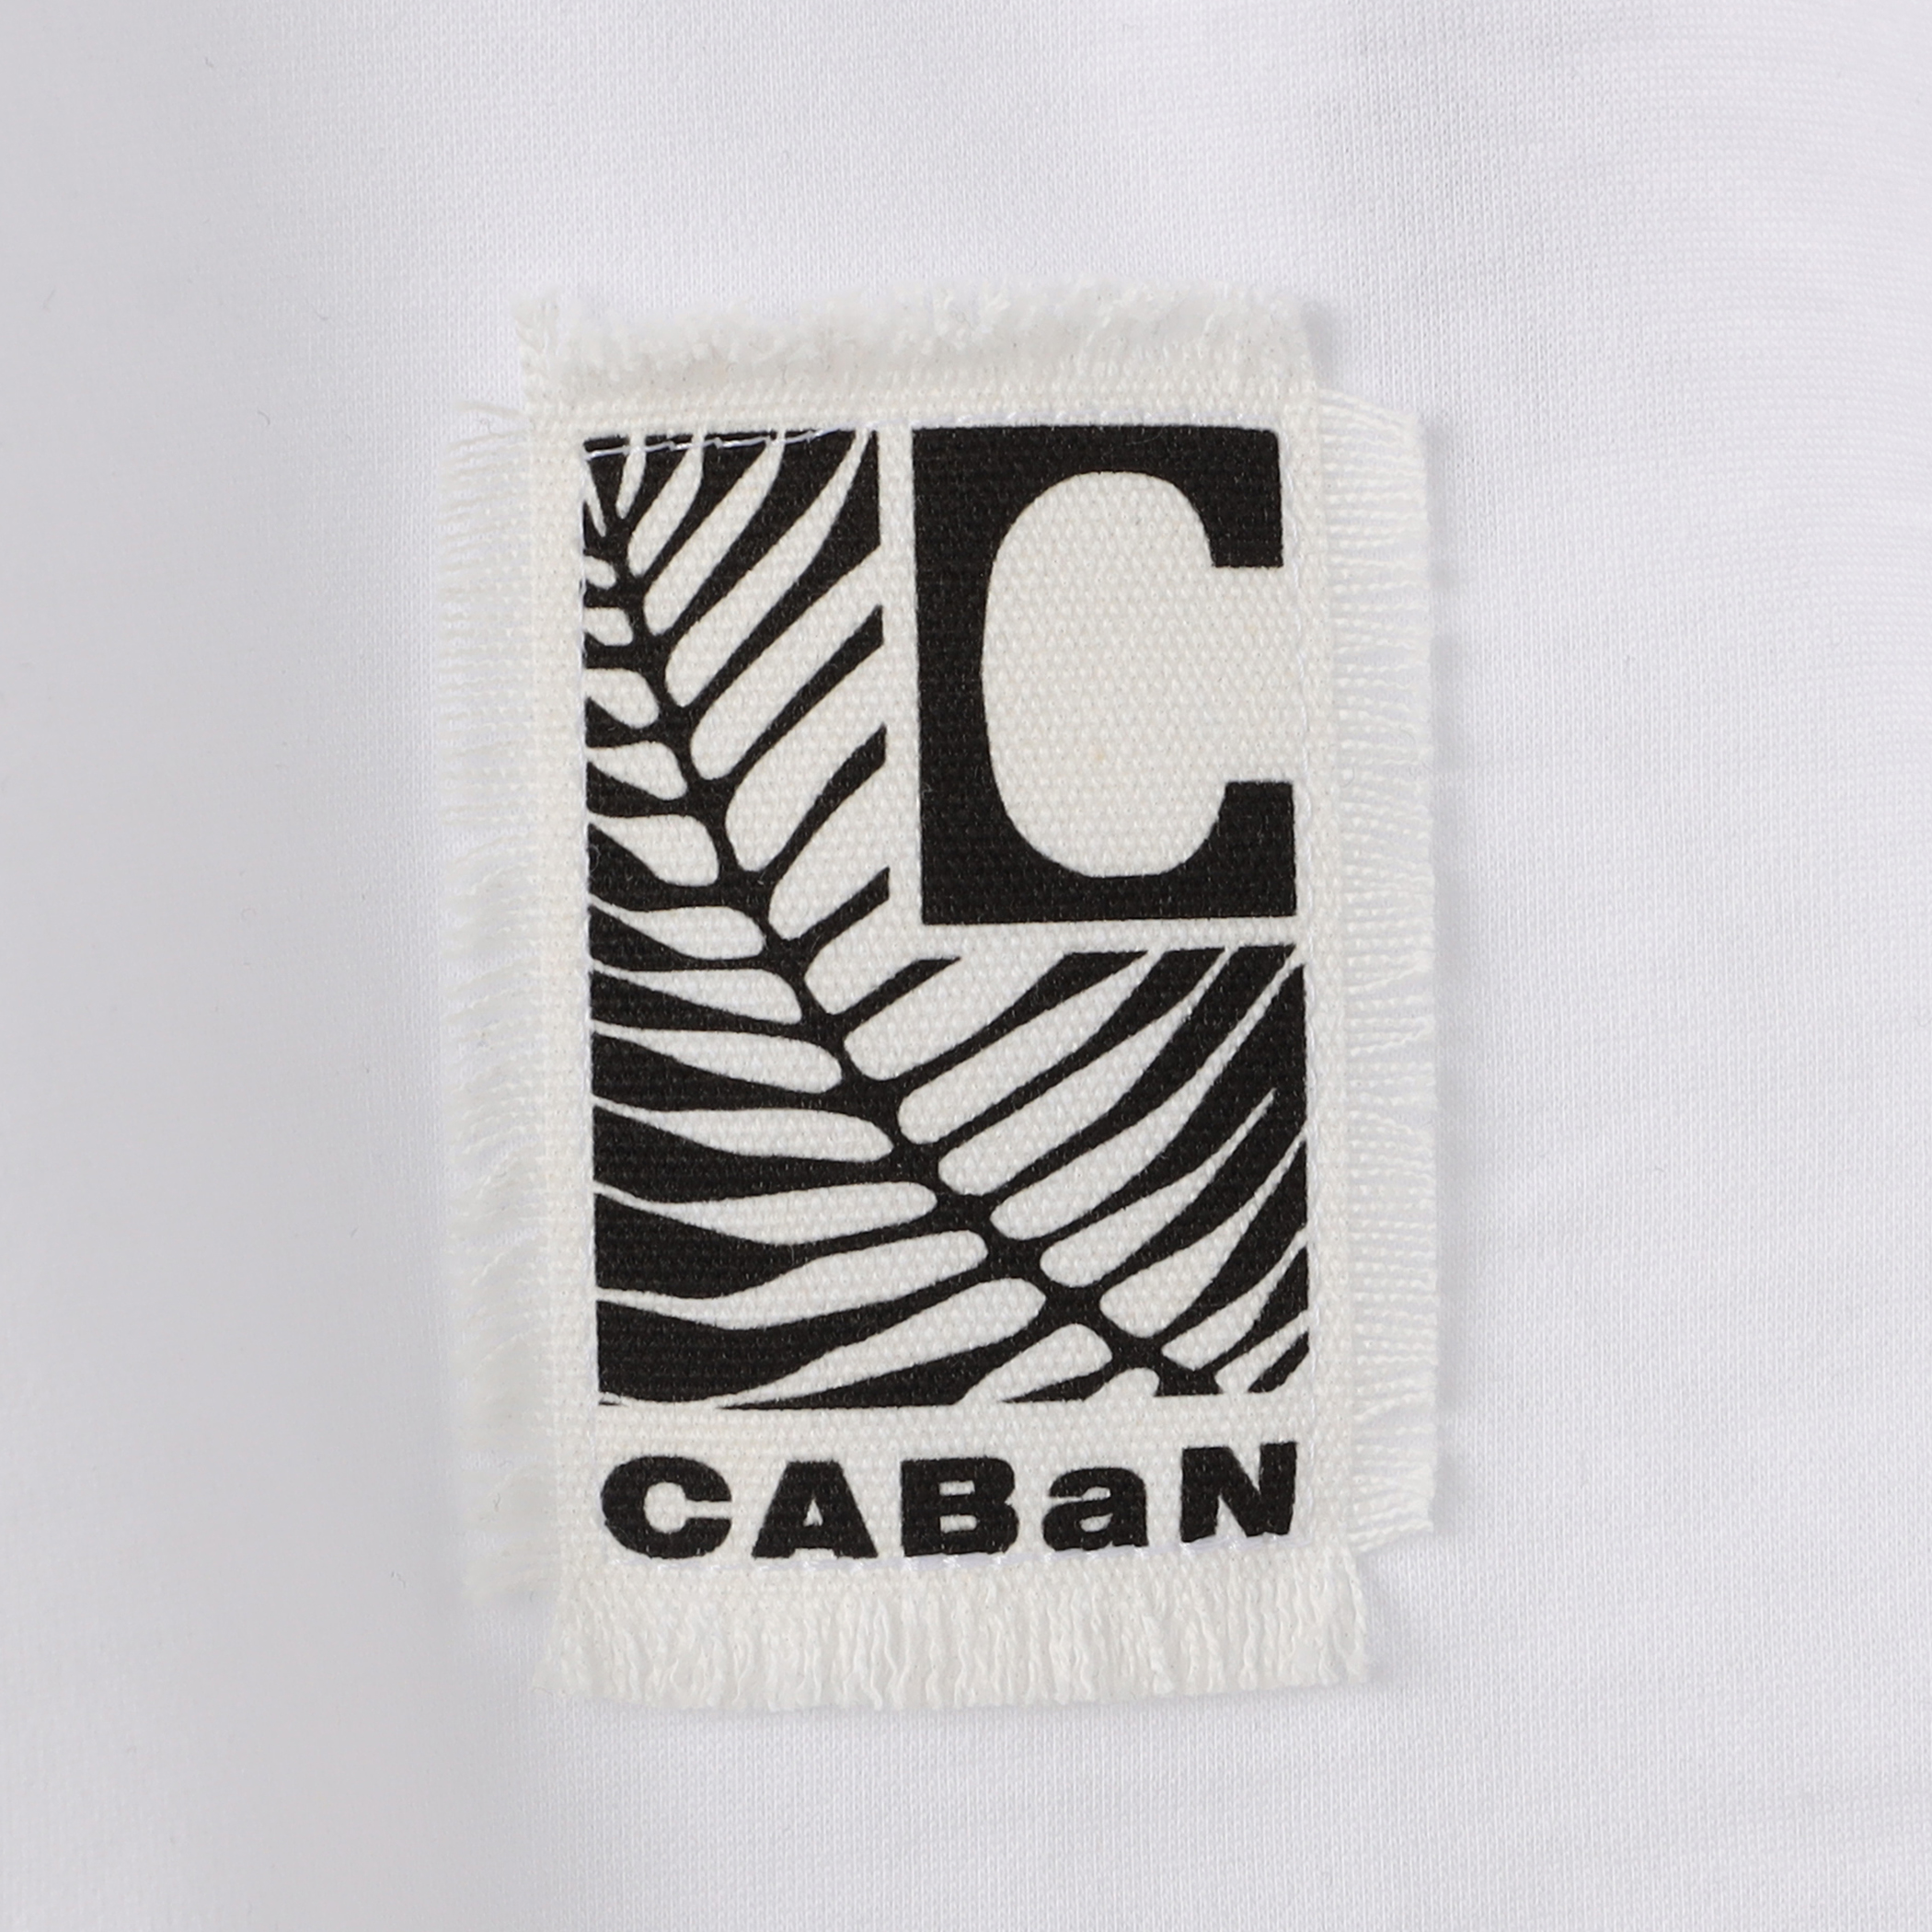 公式ネット完売品CABaN スビンコットン IBIZA アートフレームTシャツ